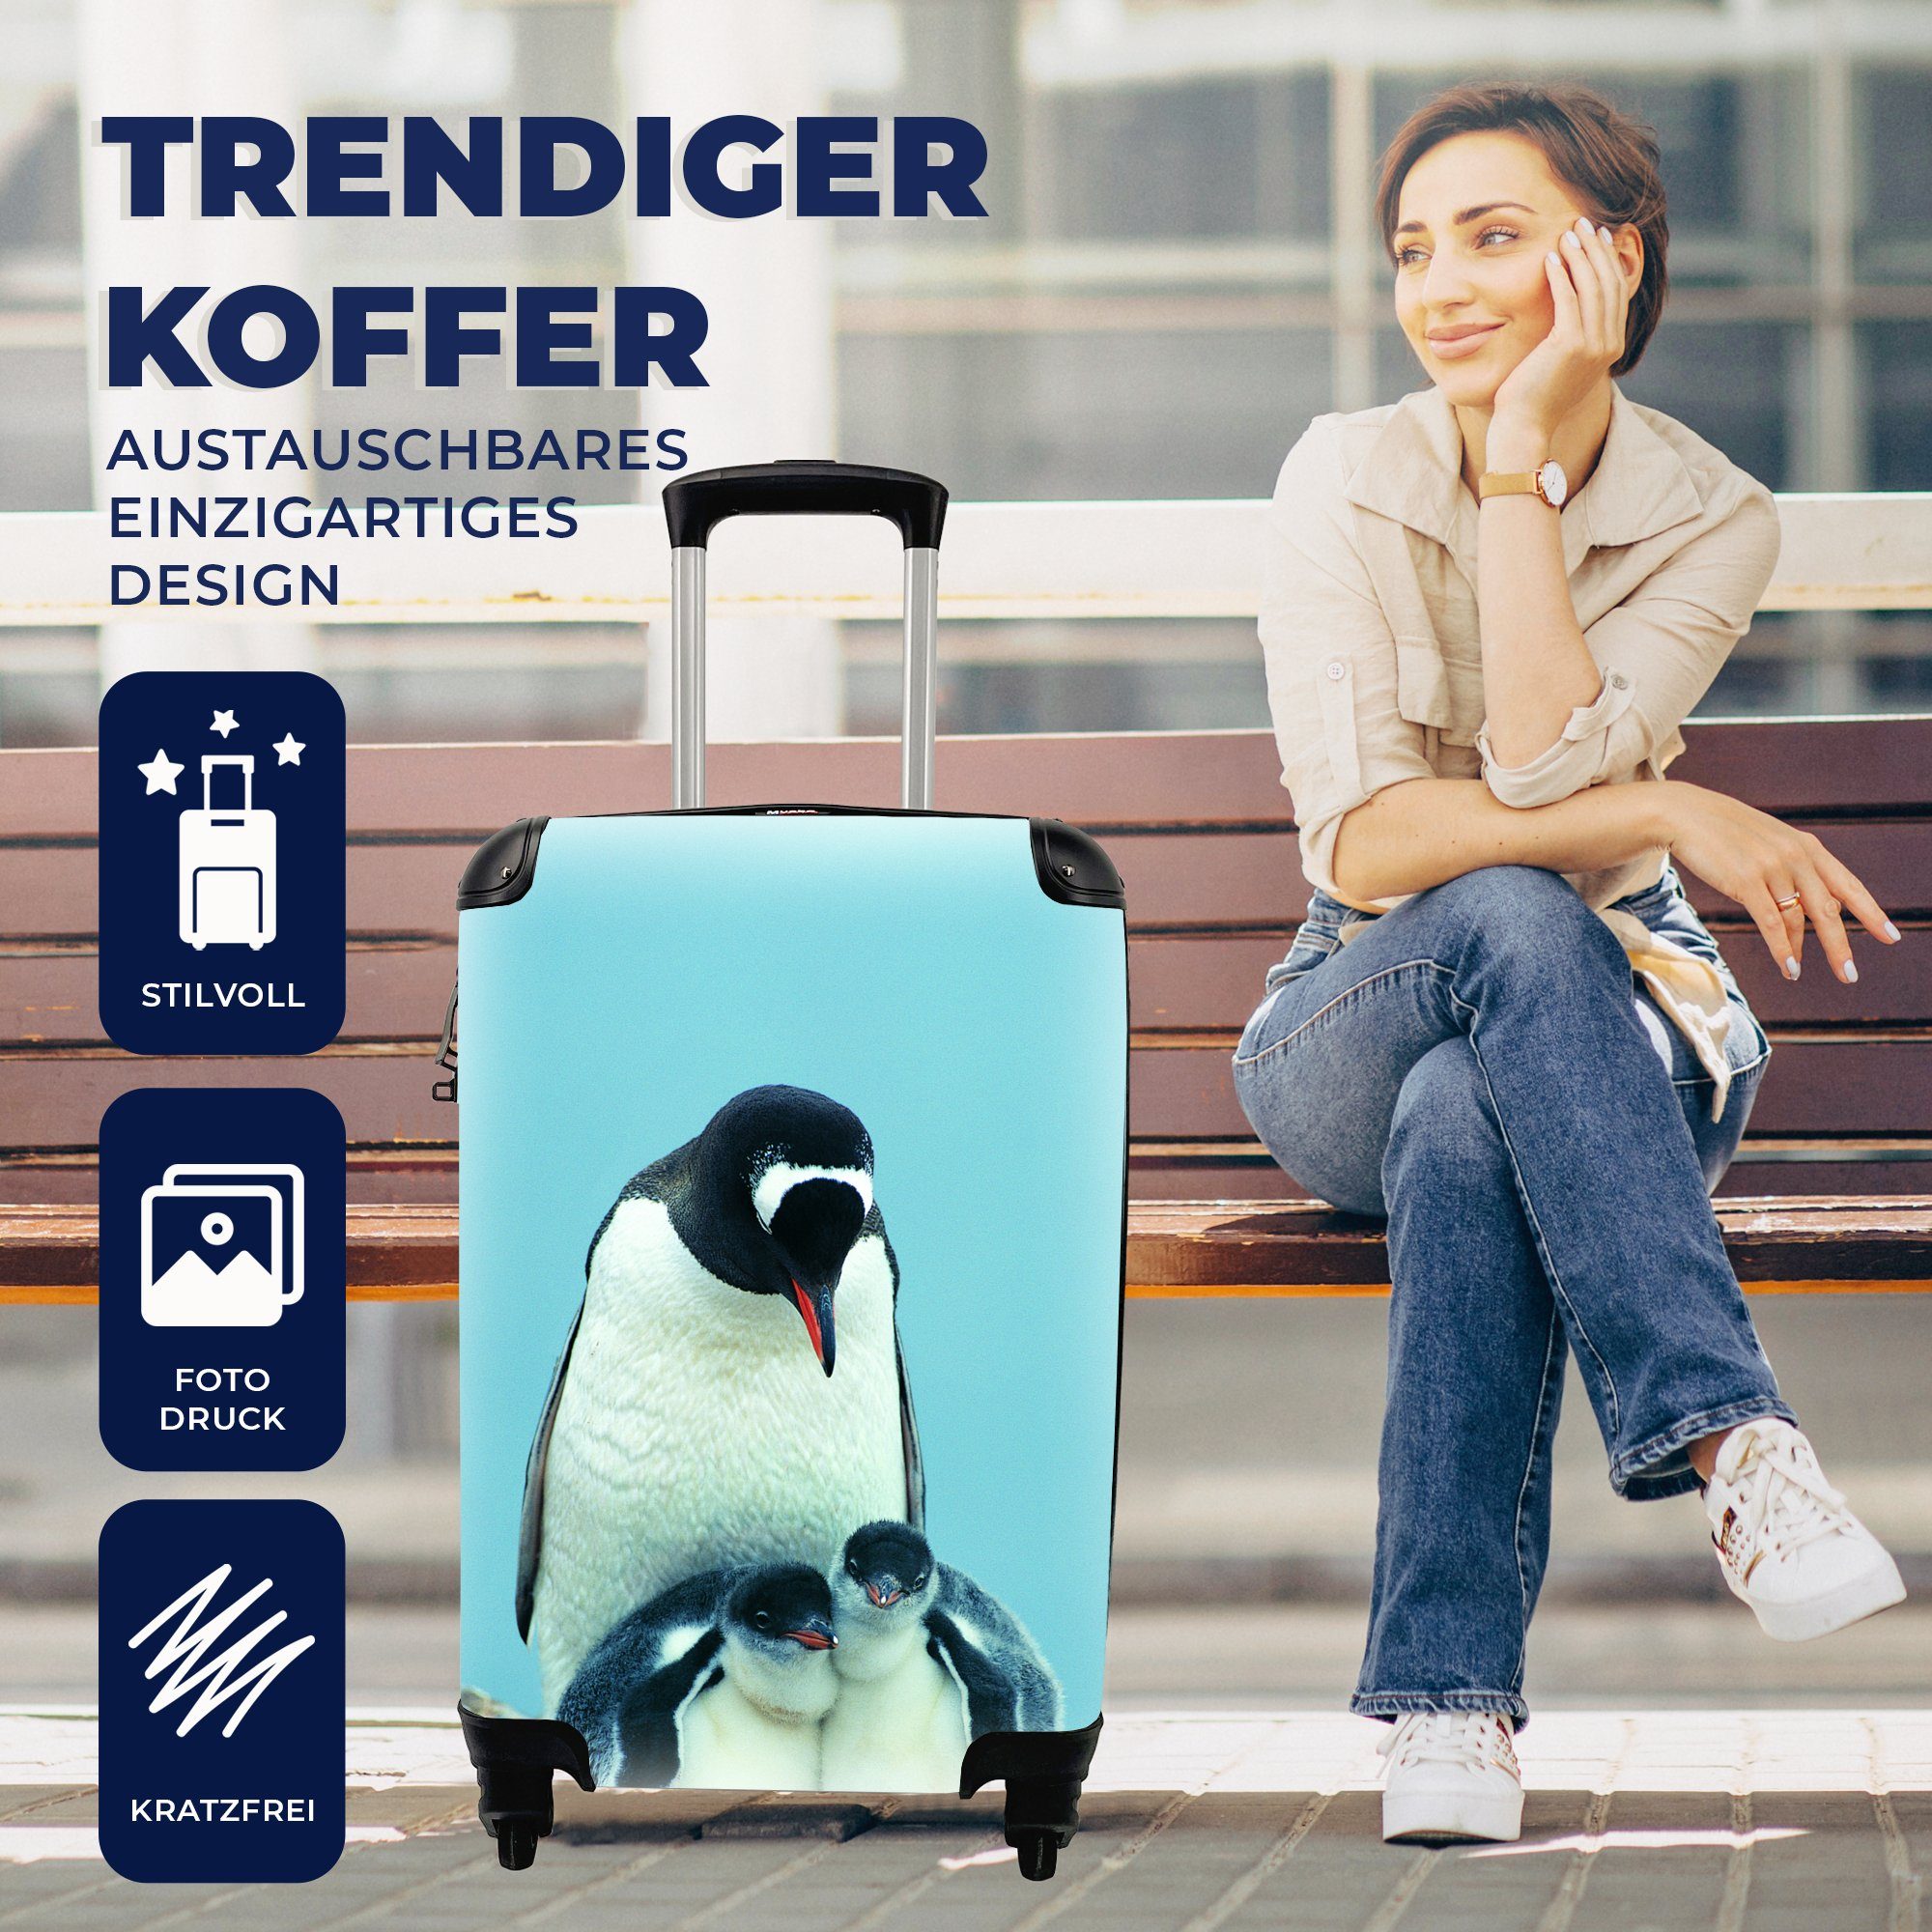 Tiere Küken, 4 rollen, für mit Pinguine - MuchoWow Ferien, Reisekoffer Handgepäck Trolley, Reisetasche Rollen, Handgepäckkoffer -